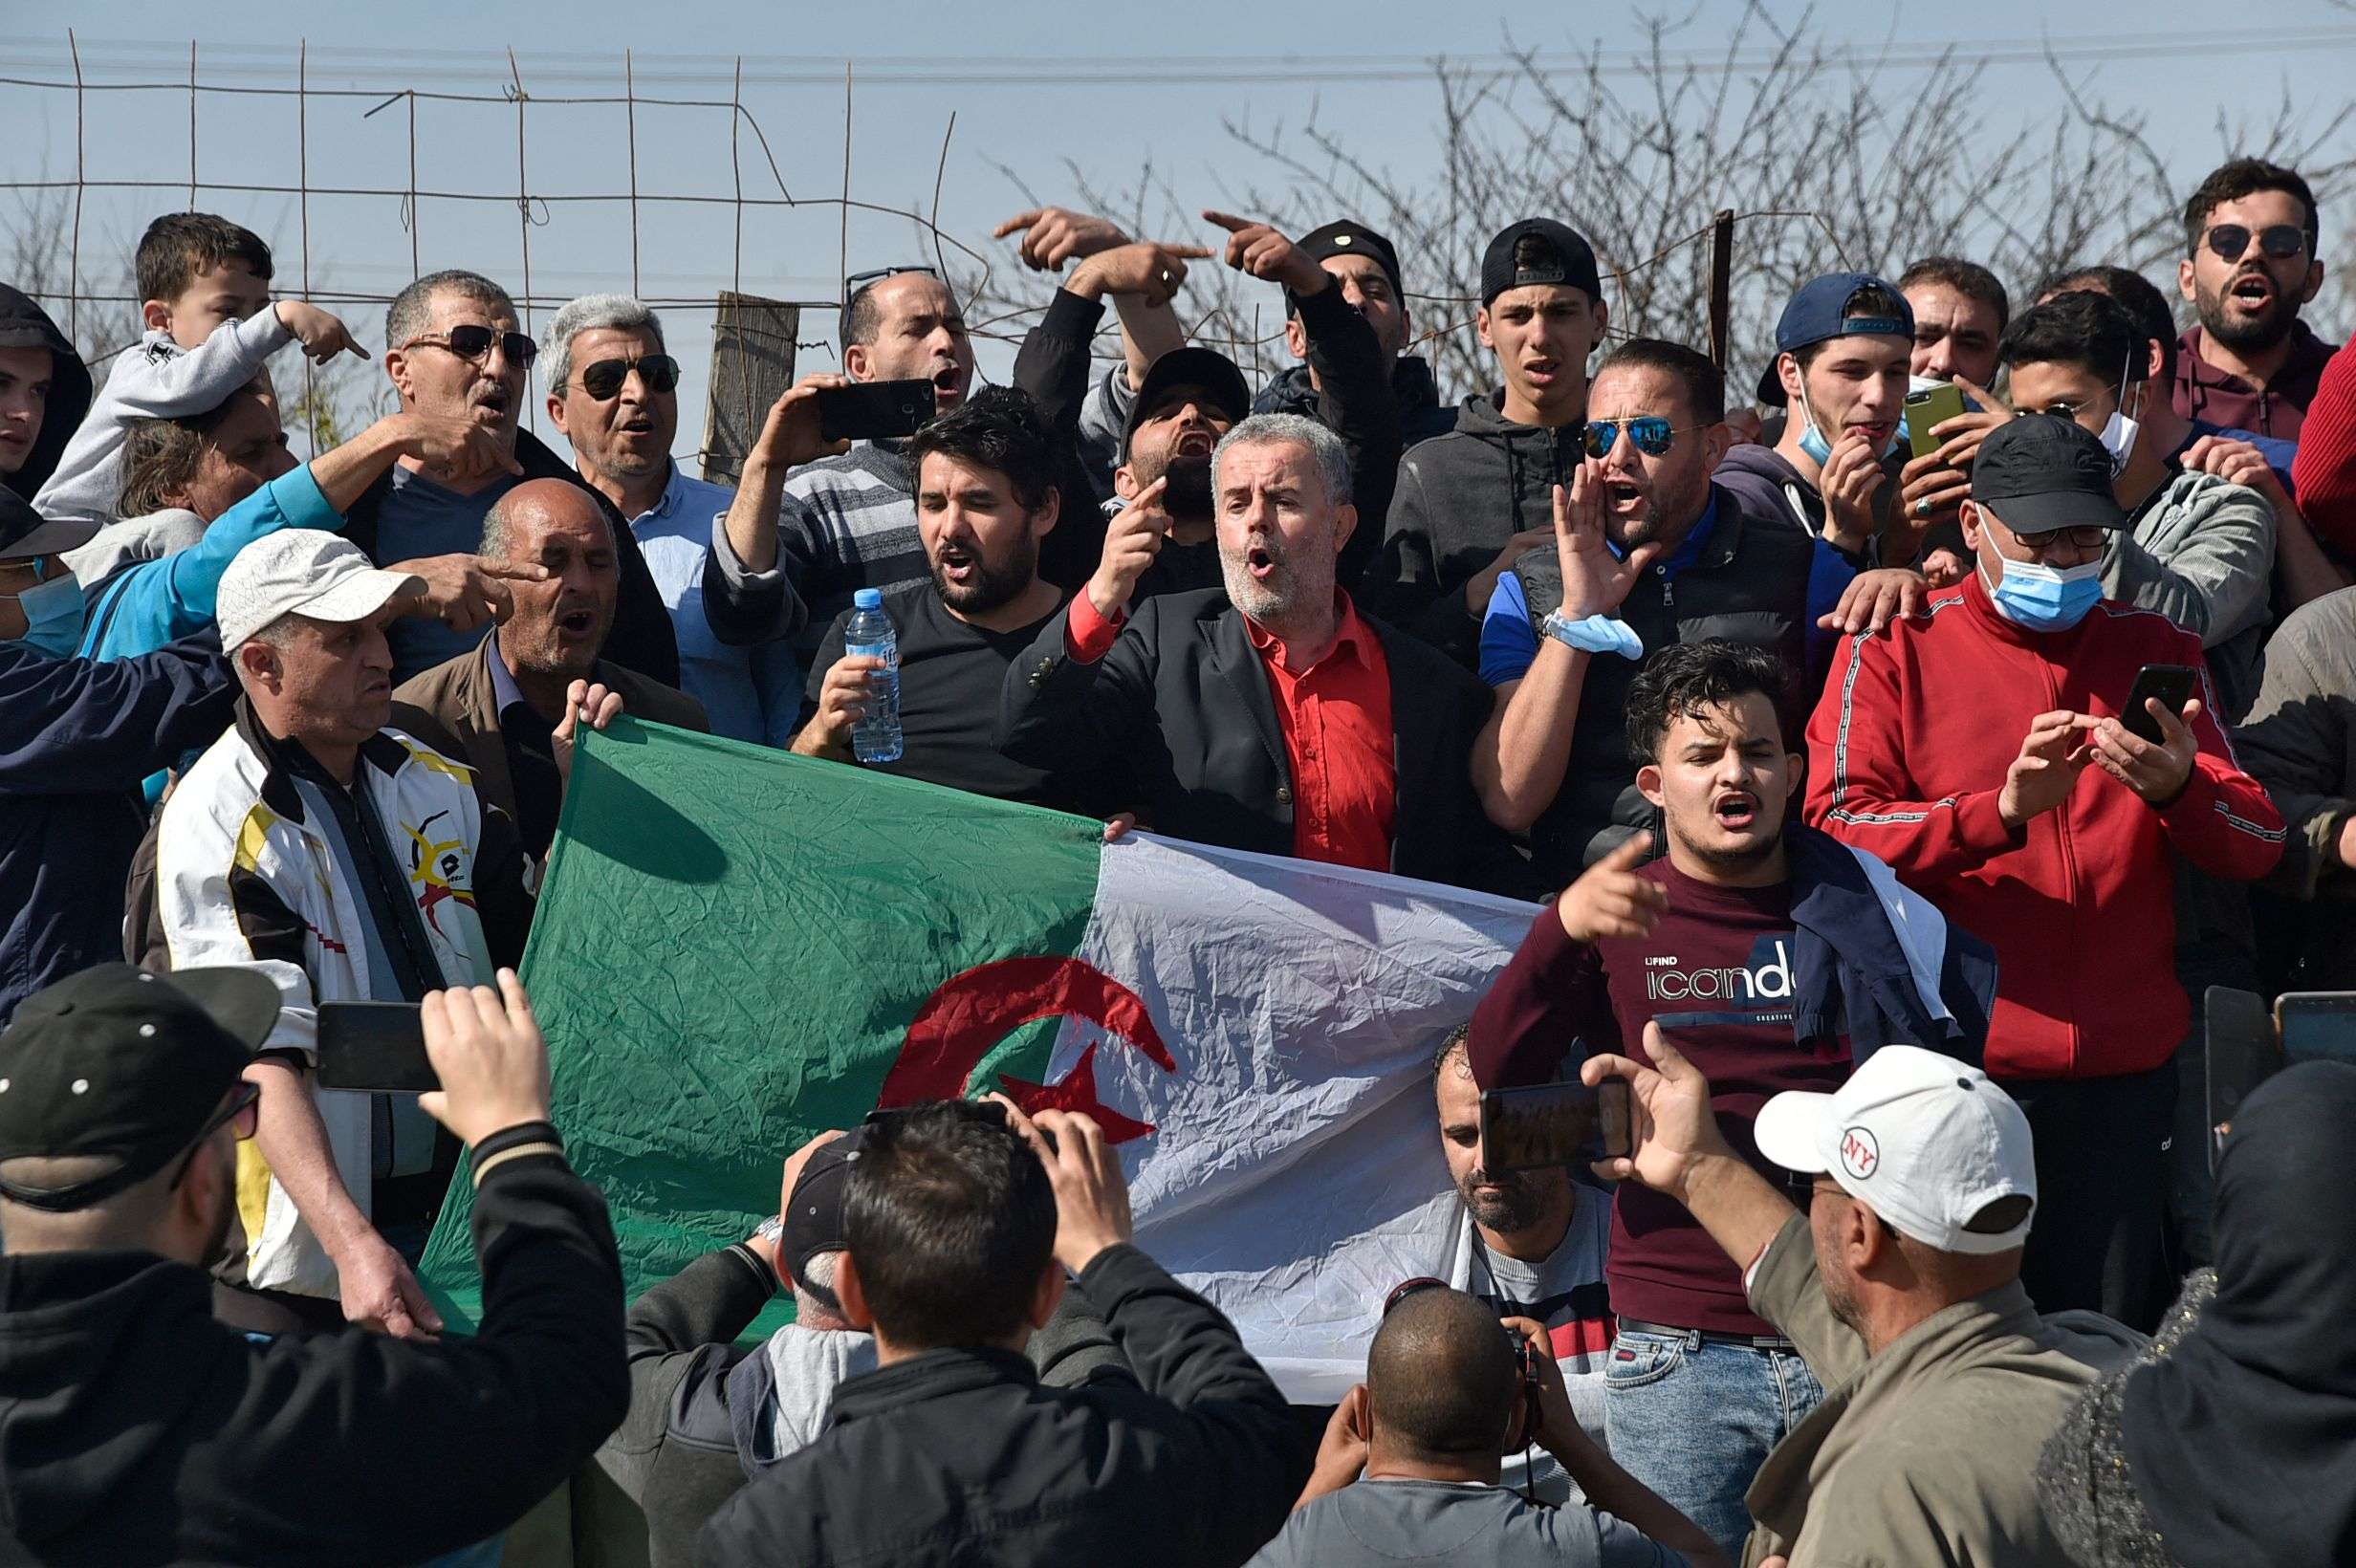 الرئيس الجزائري يتخوف من تنامي الاحتجاجات وتوسعها فيما يواجه أكثر من ازمة منذ توليه السلطة